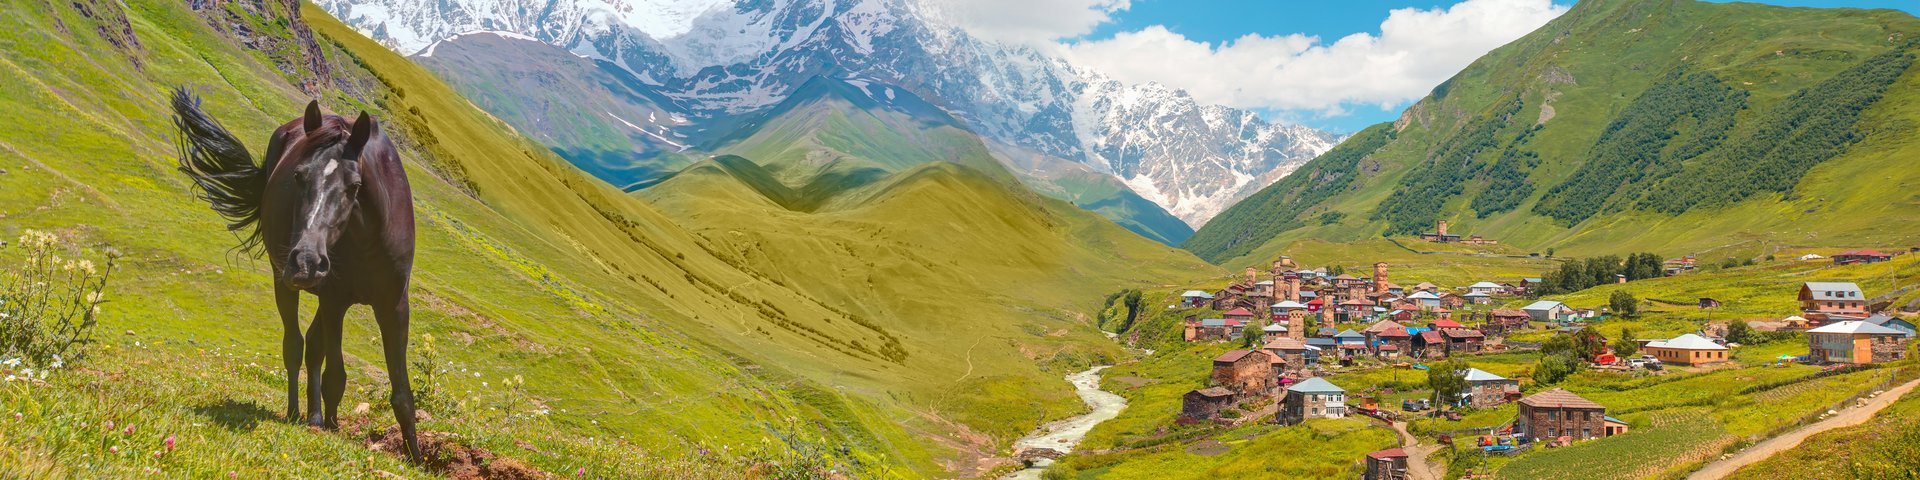 Blick aufs Bergdorf Uschguli im Kaukasus in Georgien, daneben steht ein Pferde